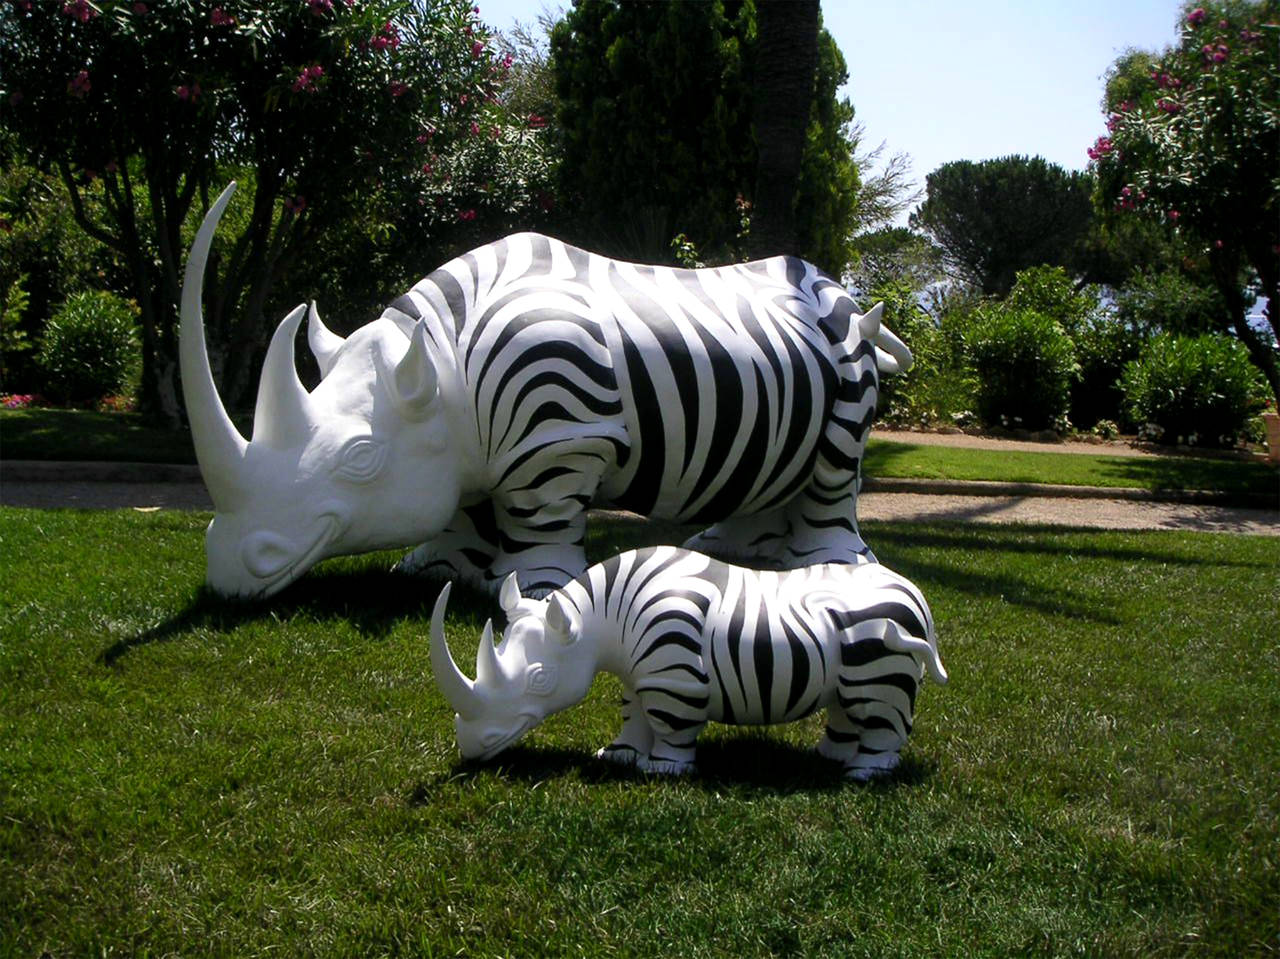 Rhinozebros - Rhinoceros orné d'une peau de zèbre - Sculpture en résine - Noir Figurative Sculpture par Patrick Schumacher